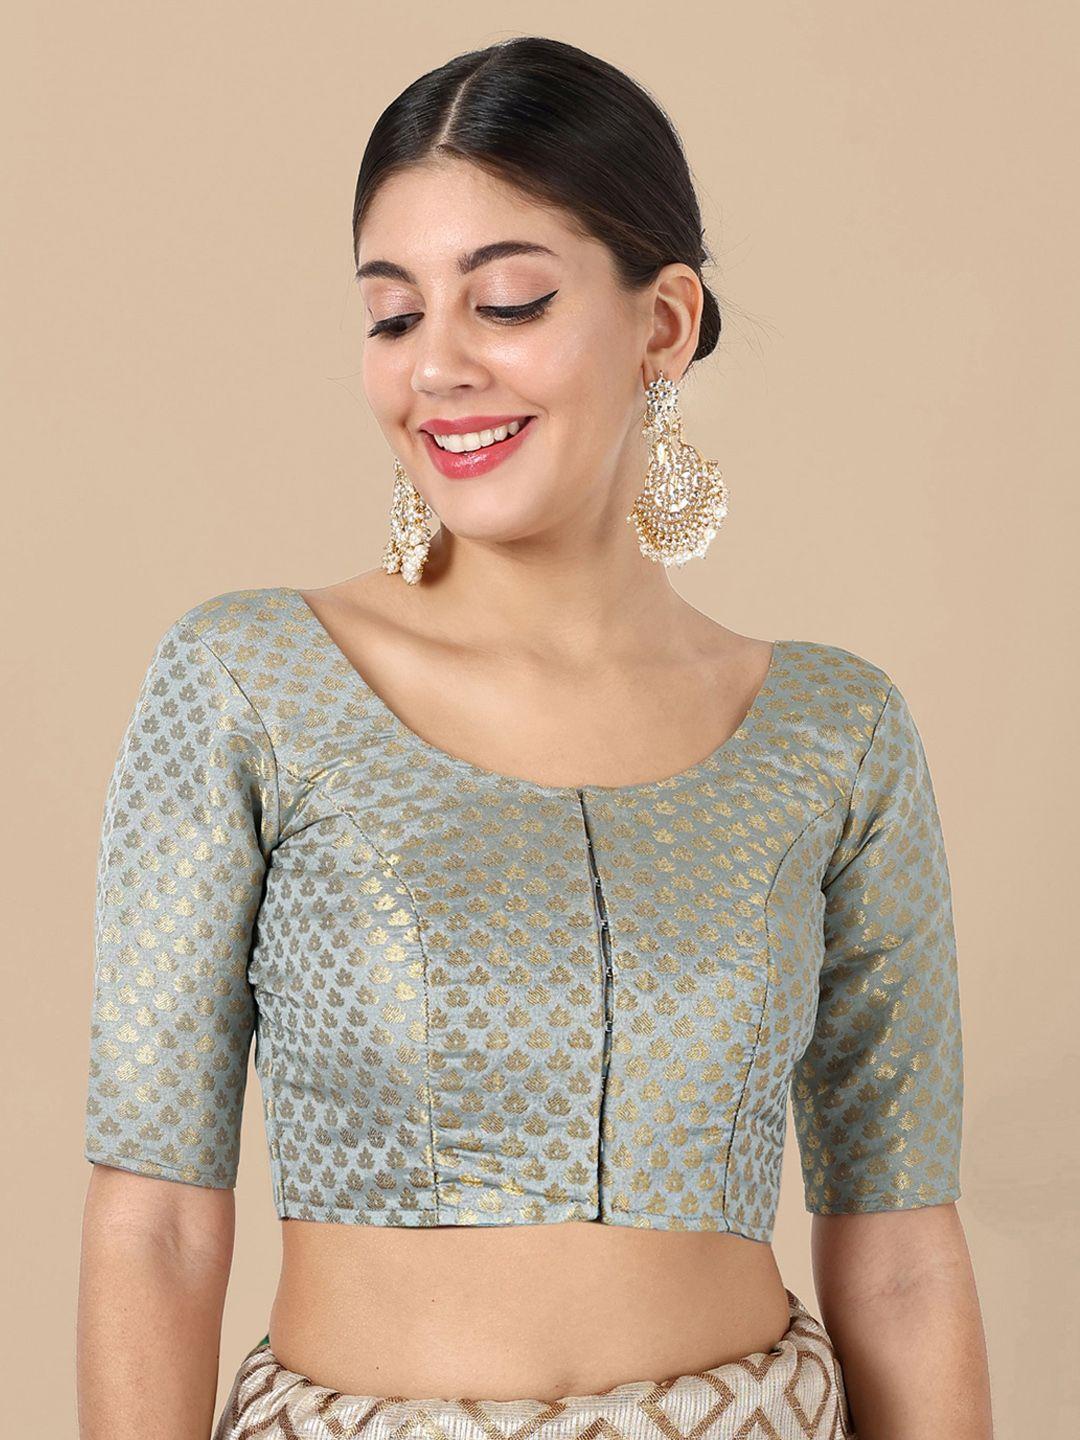 vardha woven design brocade detail saree blouse